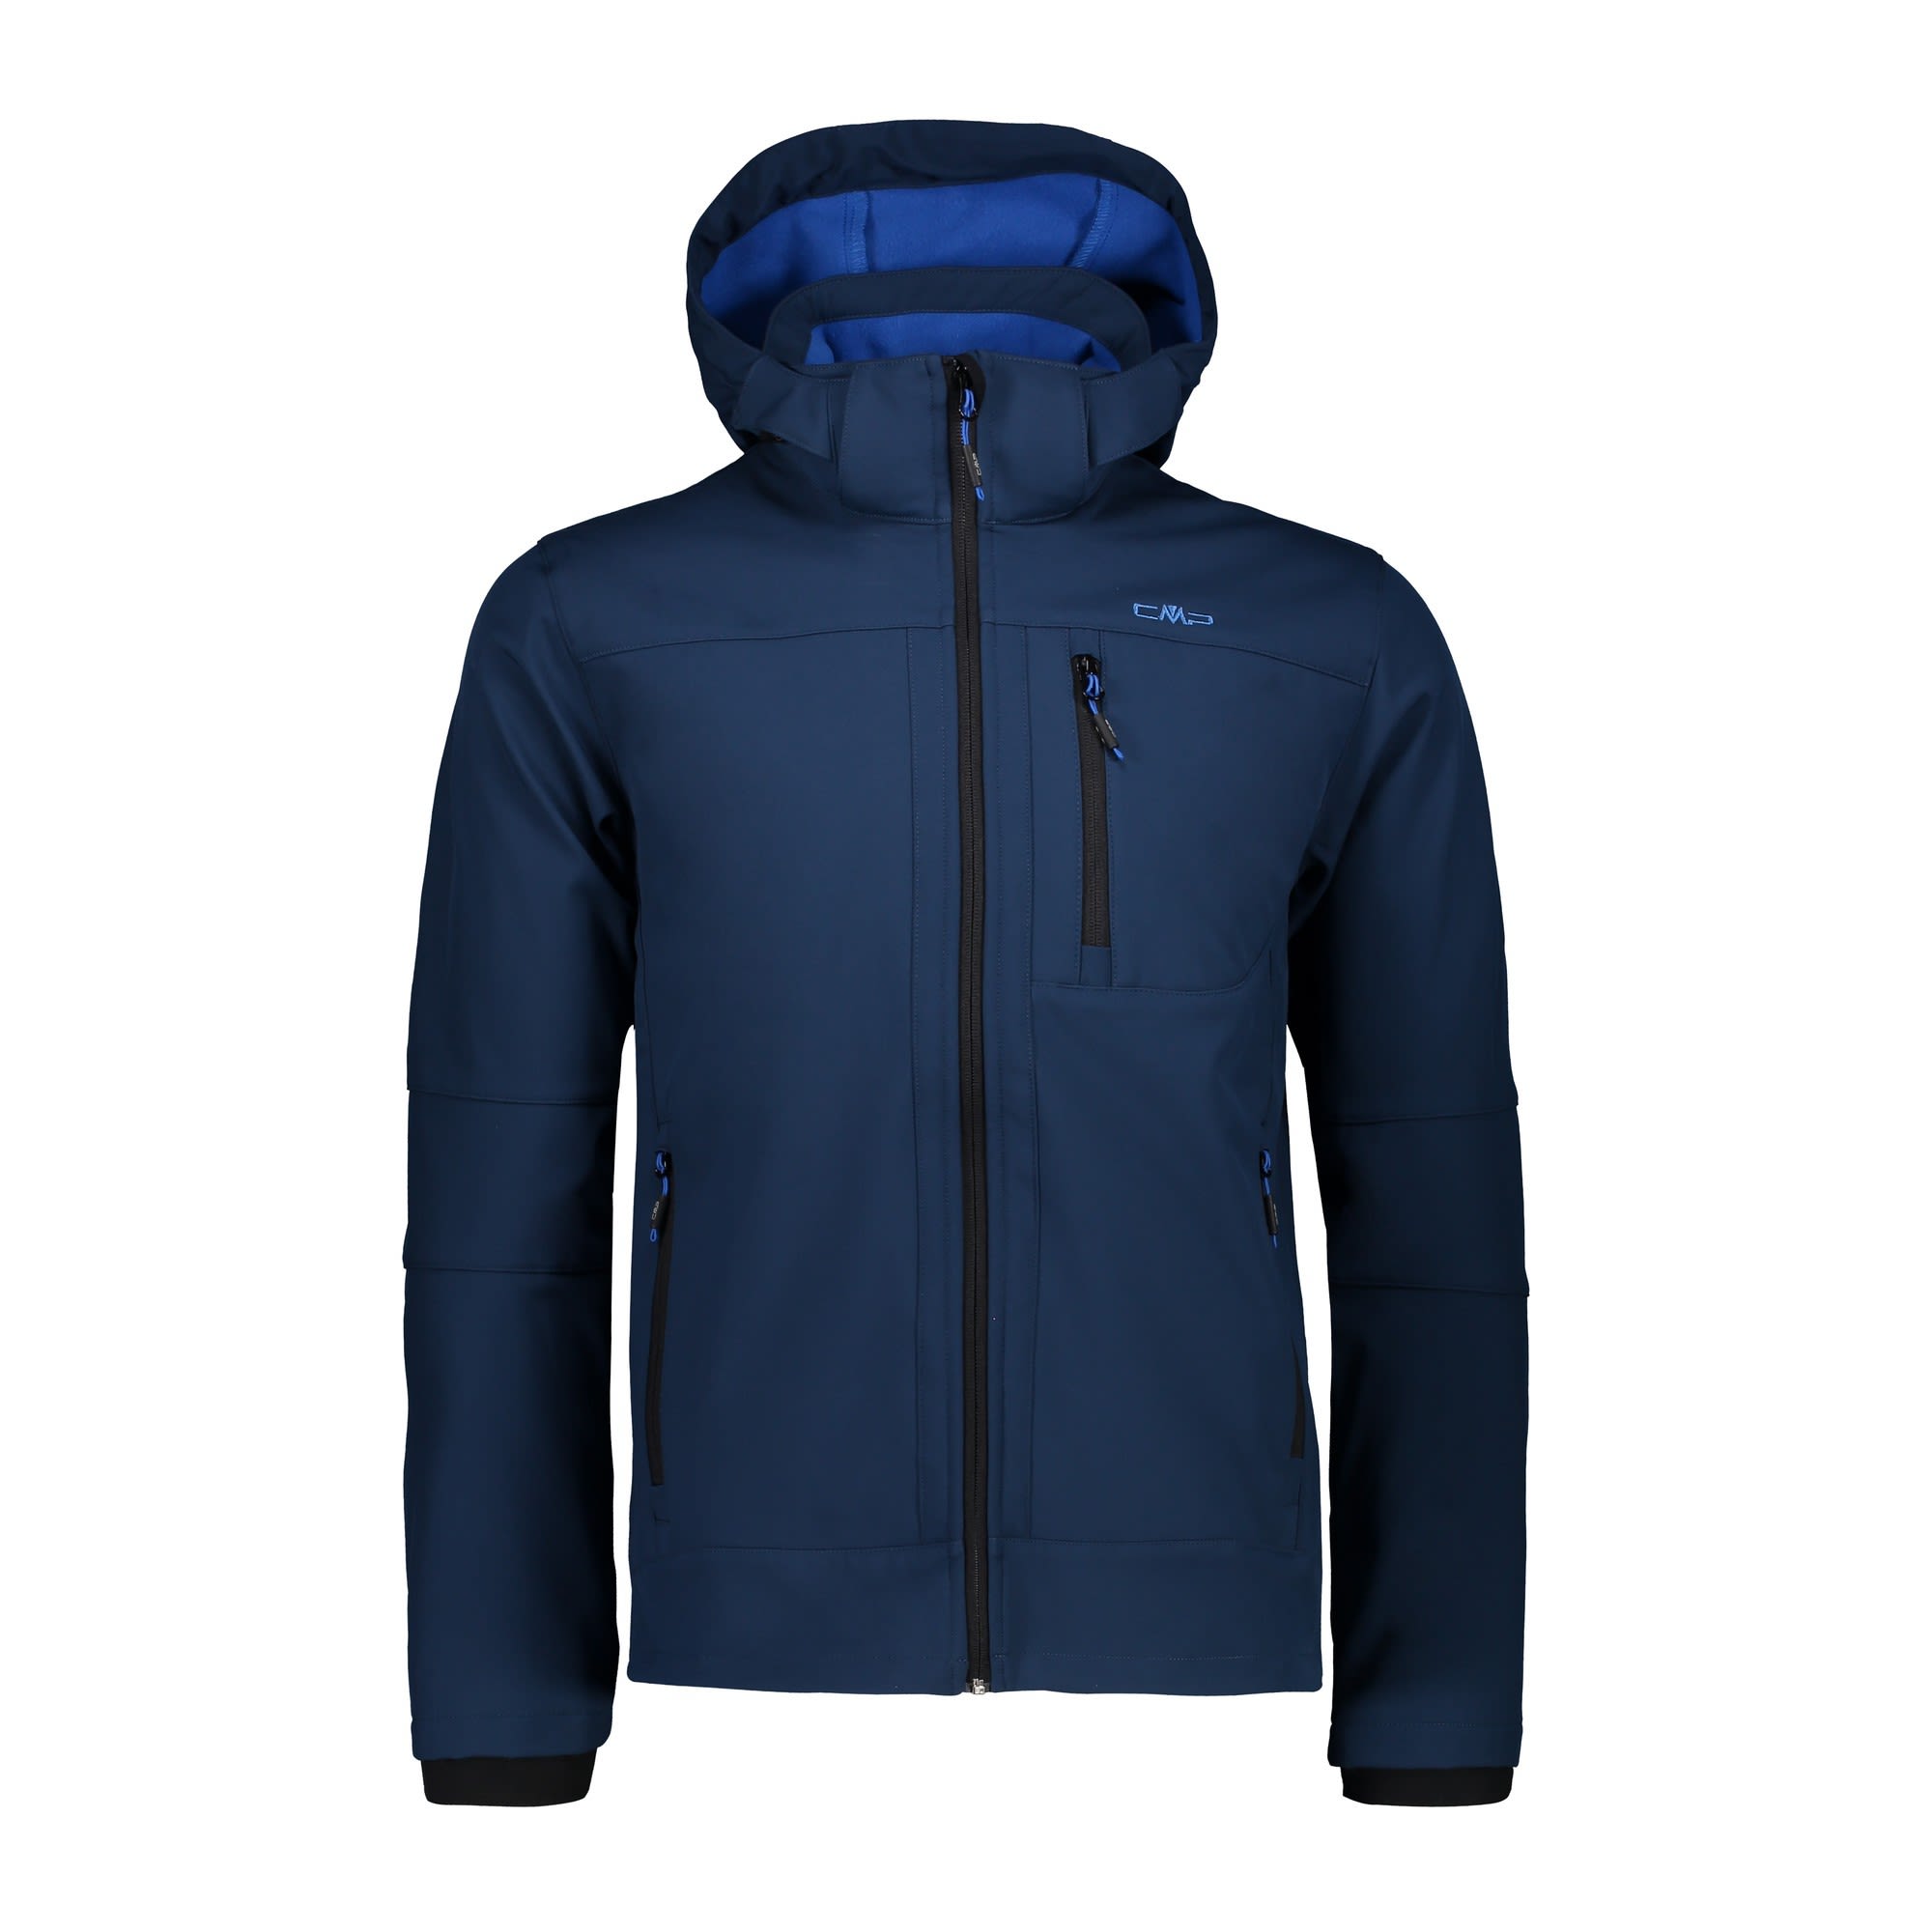 CMP Jacket Zip Hood Clean Blau- Male Softshelljacken- Grsse 58 - Farbe Marine unter CMP